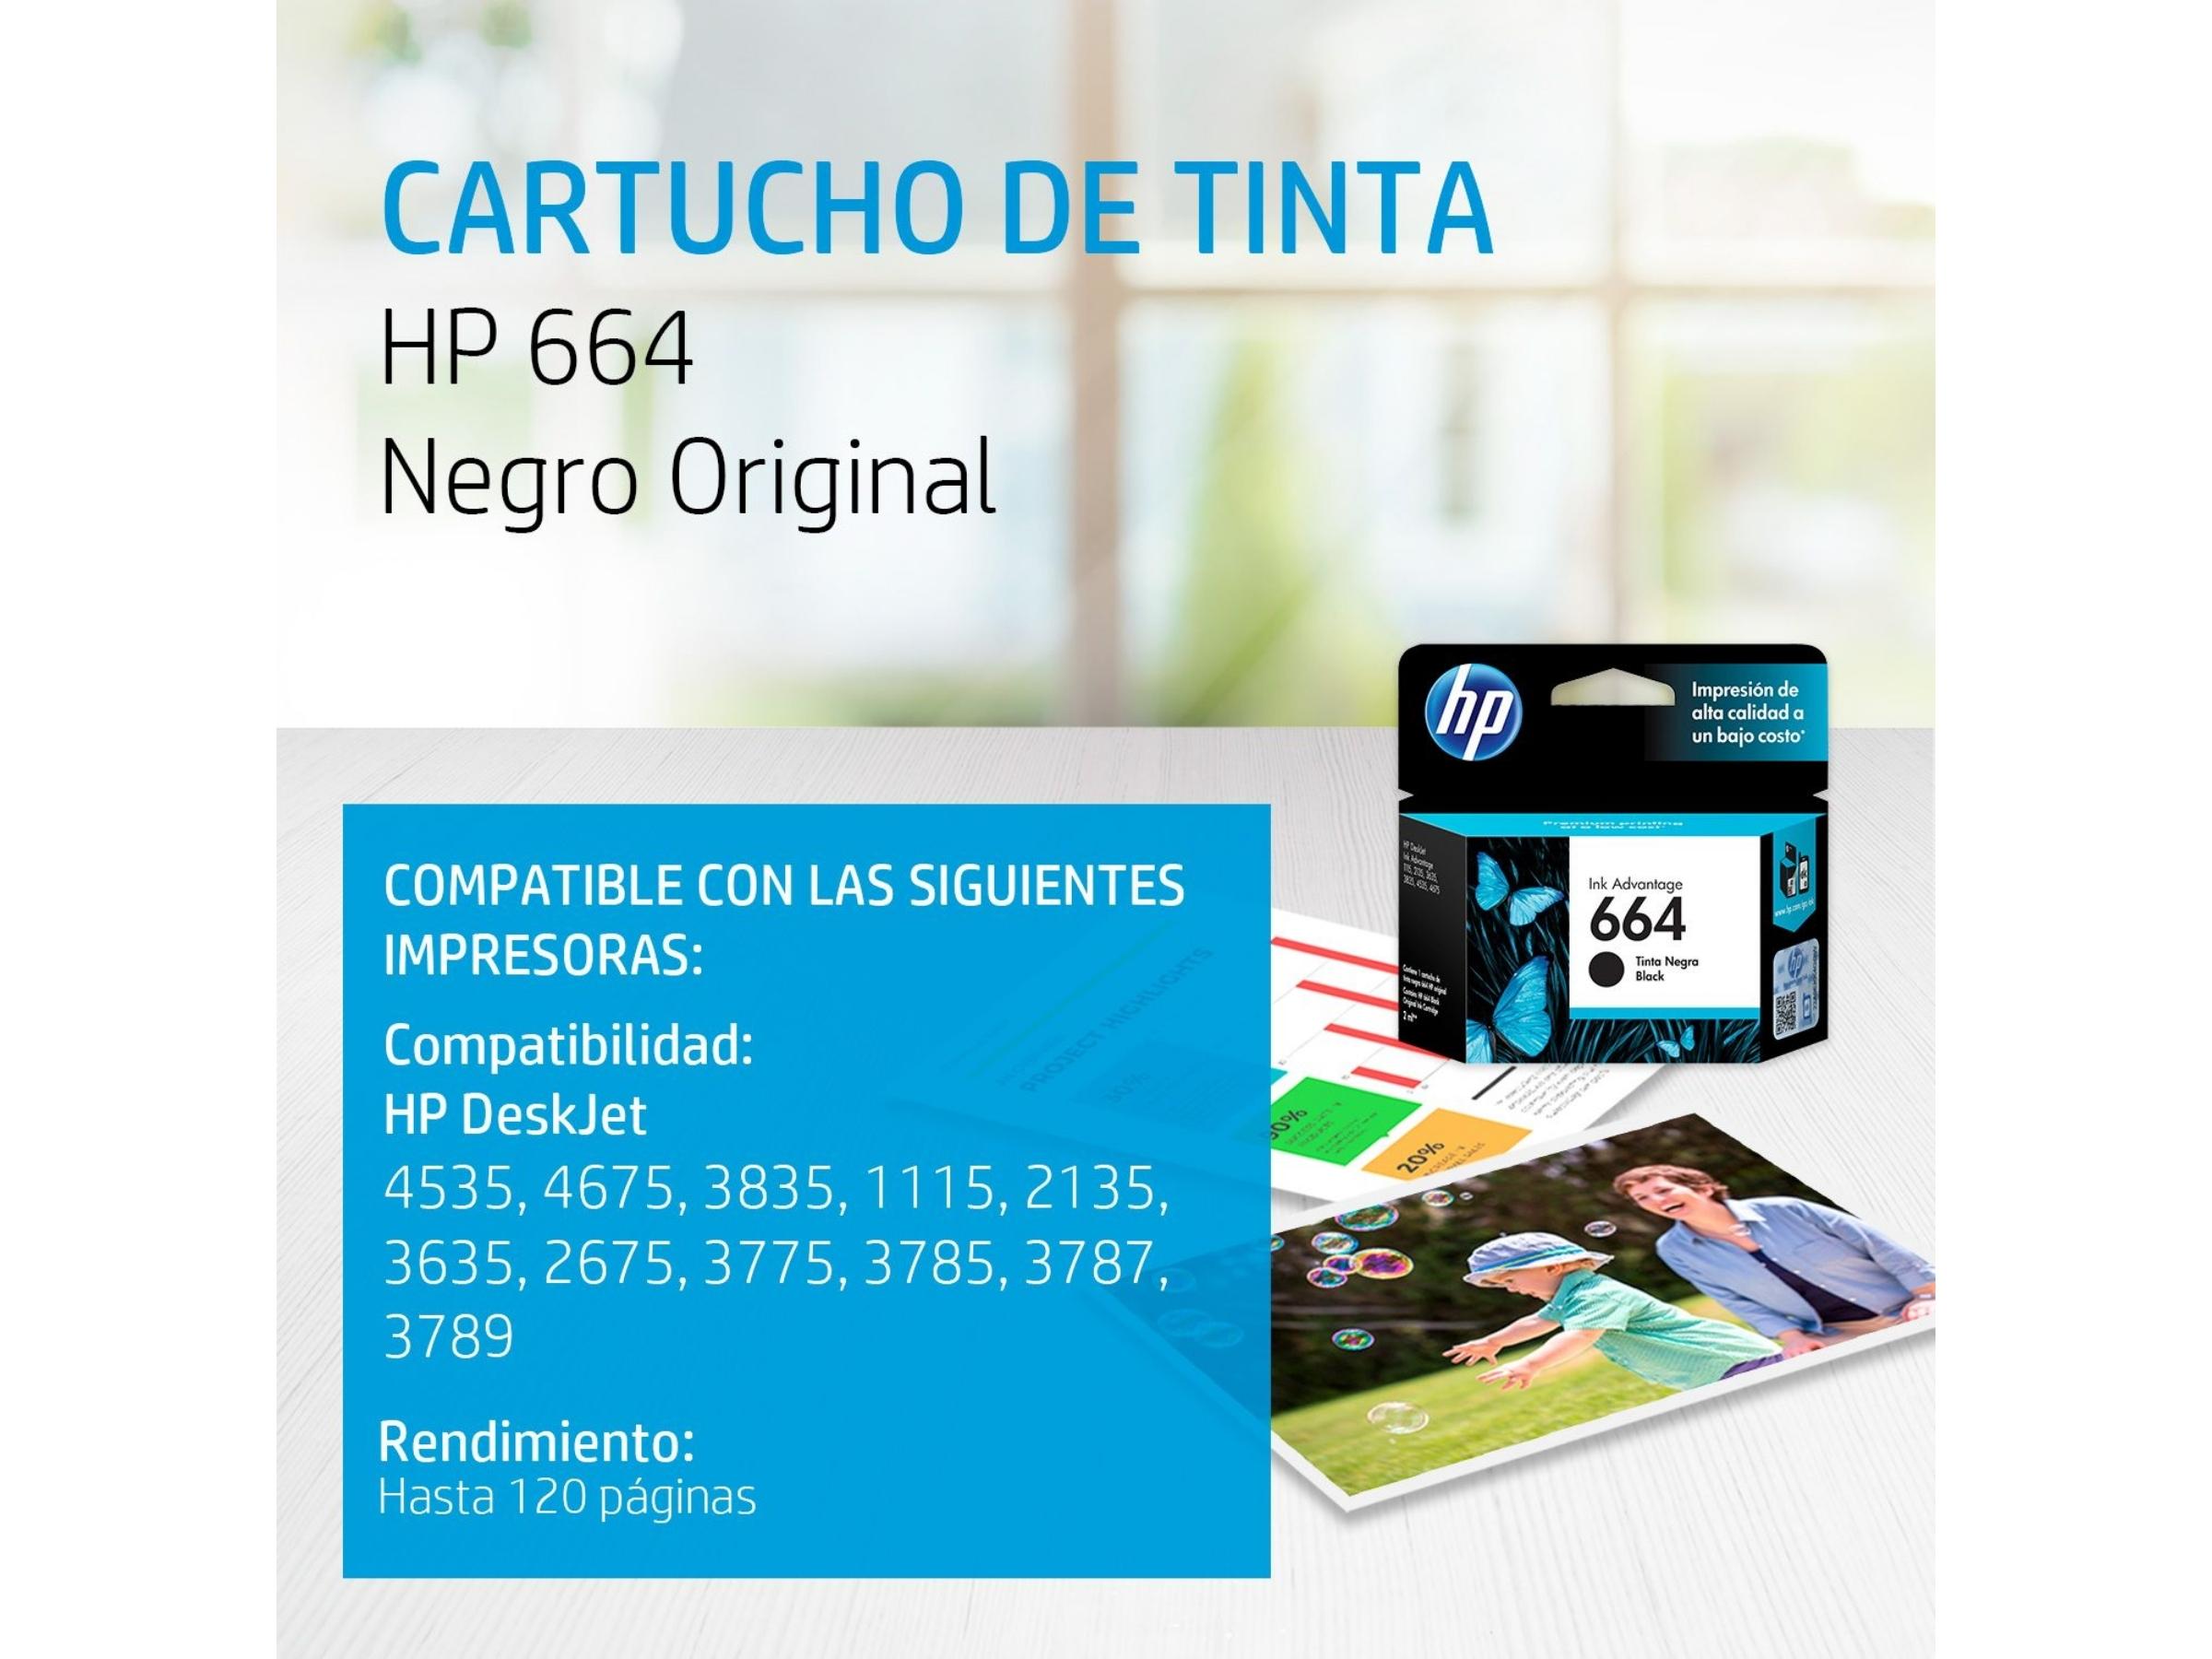 CARTUCHO DE TINTA HP 664 BLACK (F6V29AL) 1115/2135/3635/4535/4675